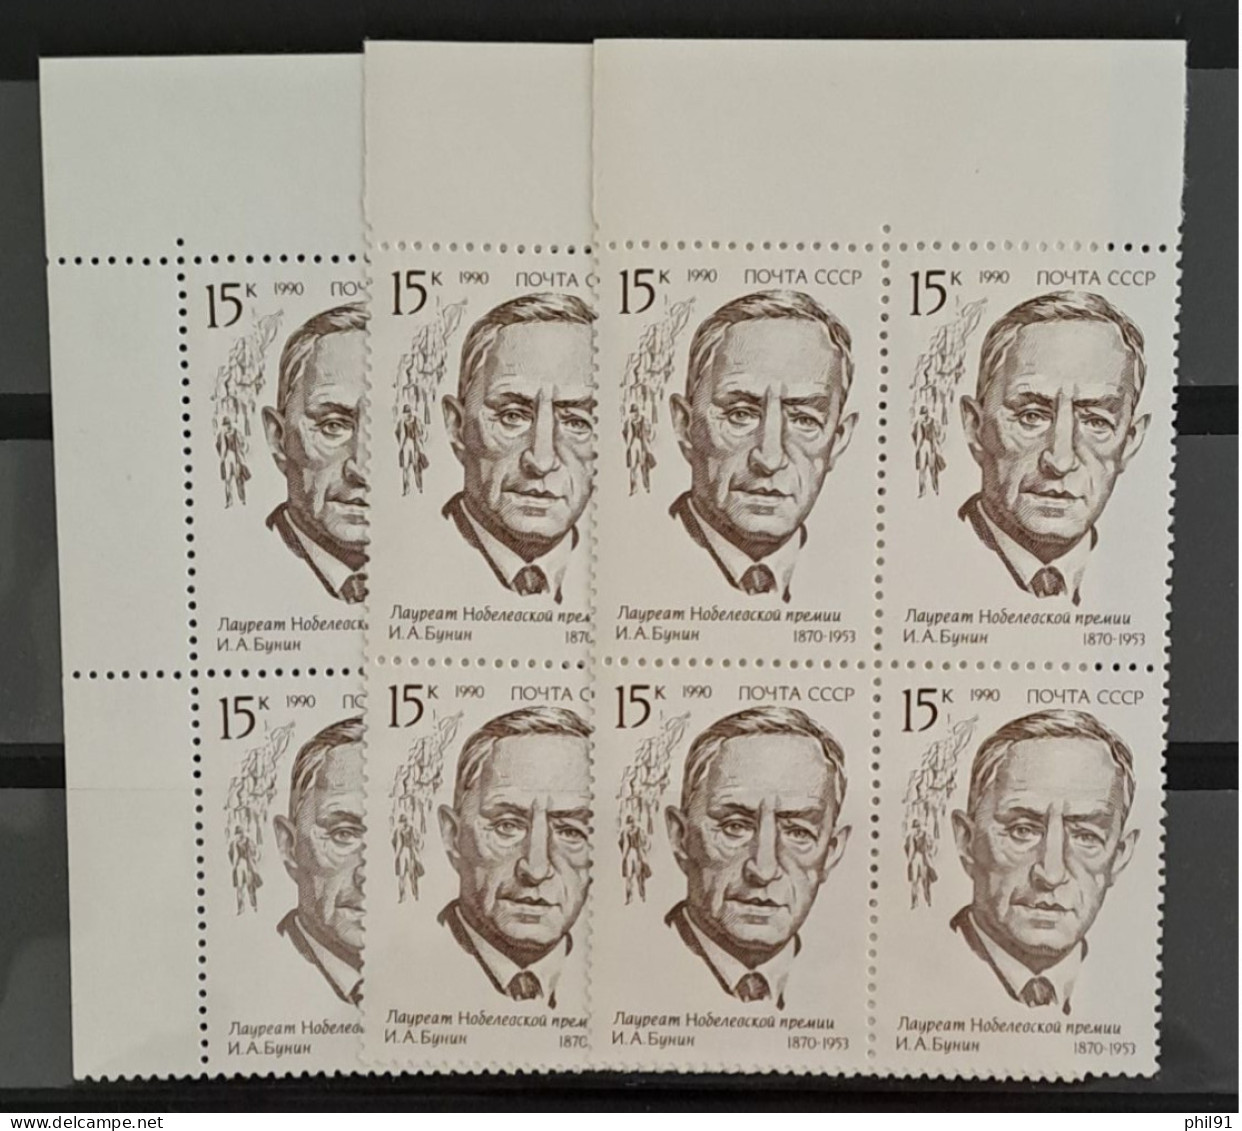 U.R.S.S.    Lot de timbres neufs des années 1966 à 1990 en blocs de 4